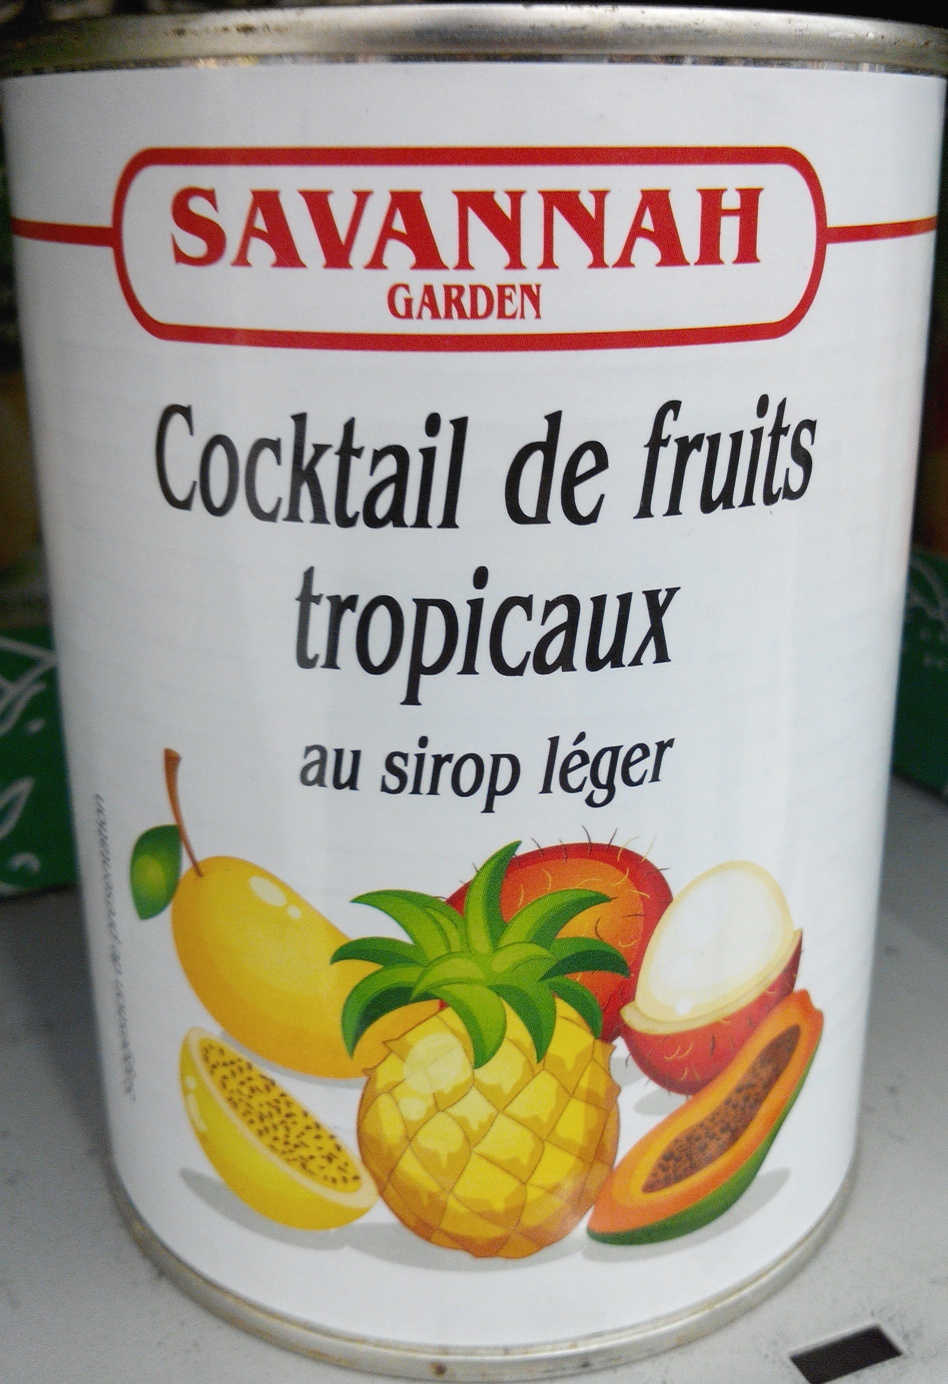 Cocktail de fruits tropicaux au sirop léger - Producto - fr